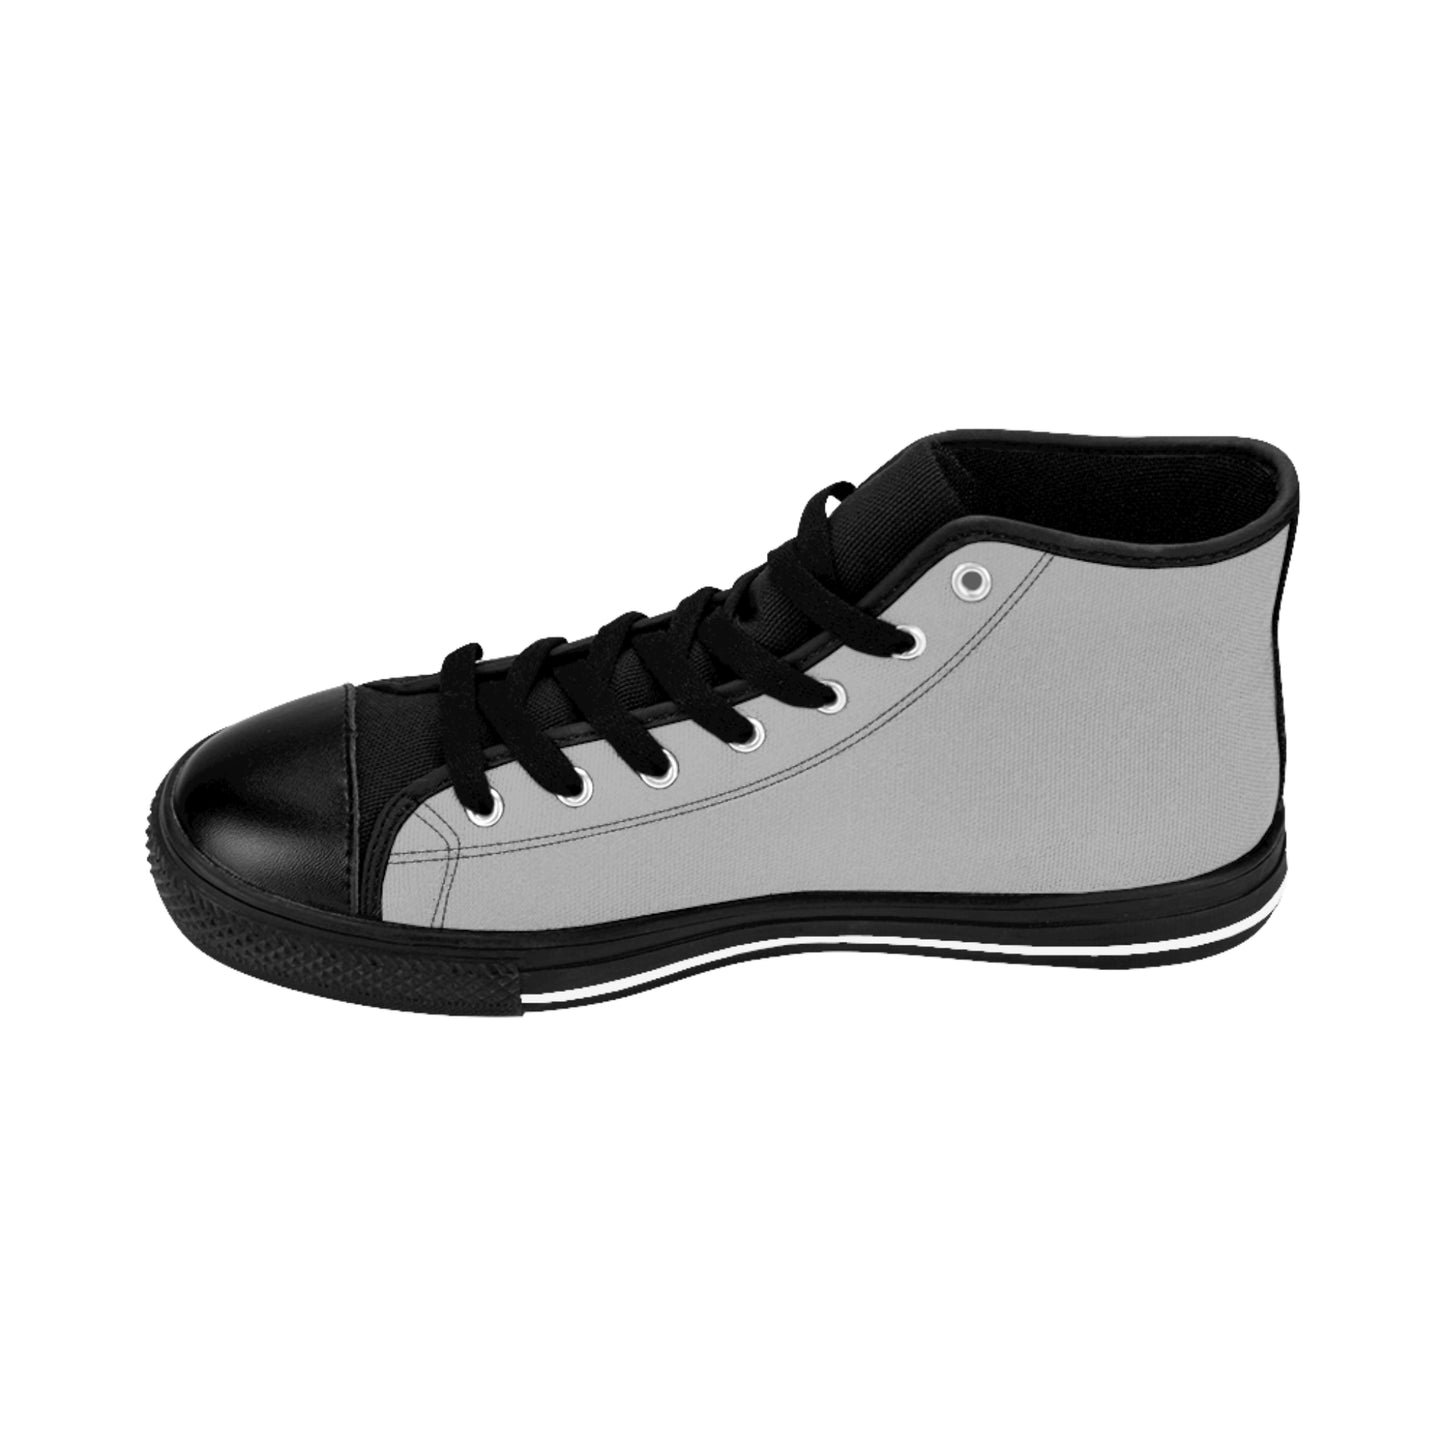 Friends - High-top Shoes (Light Grey)